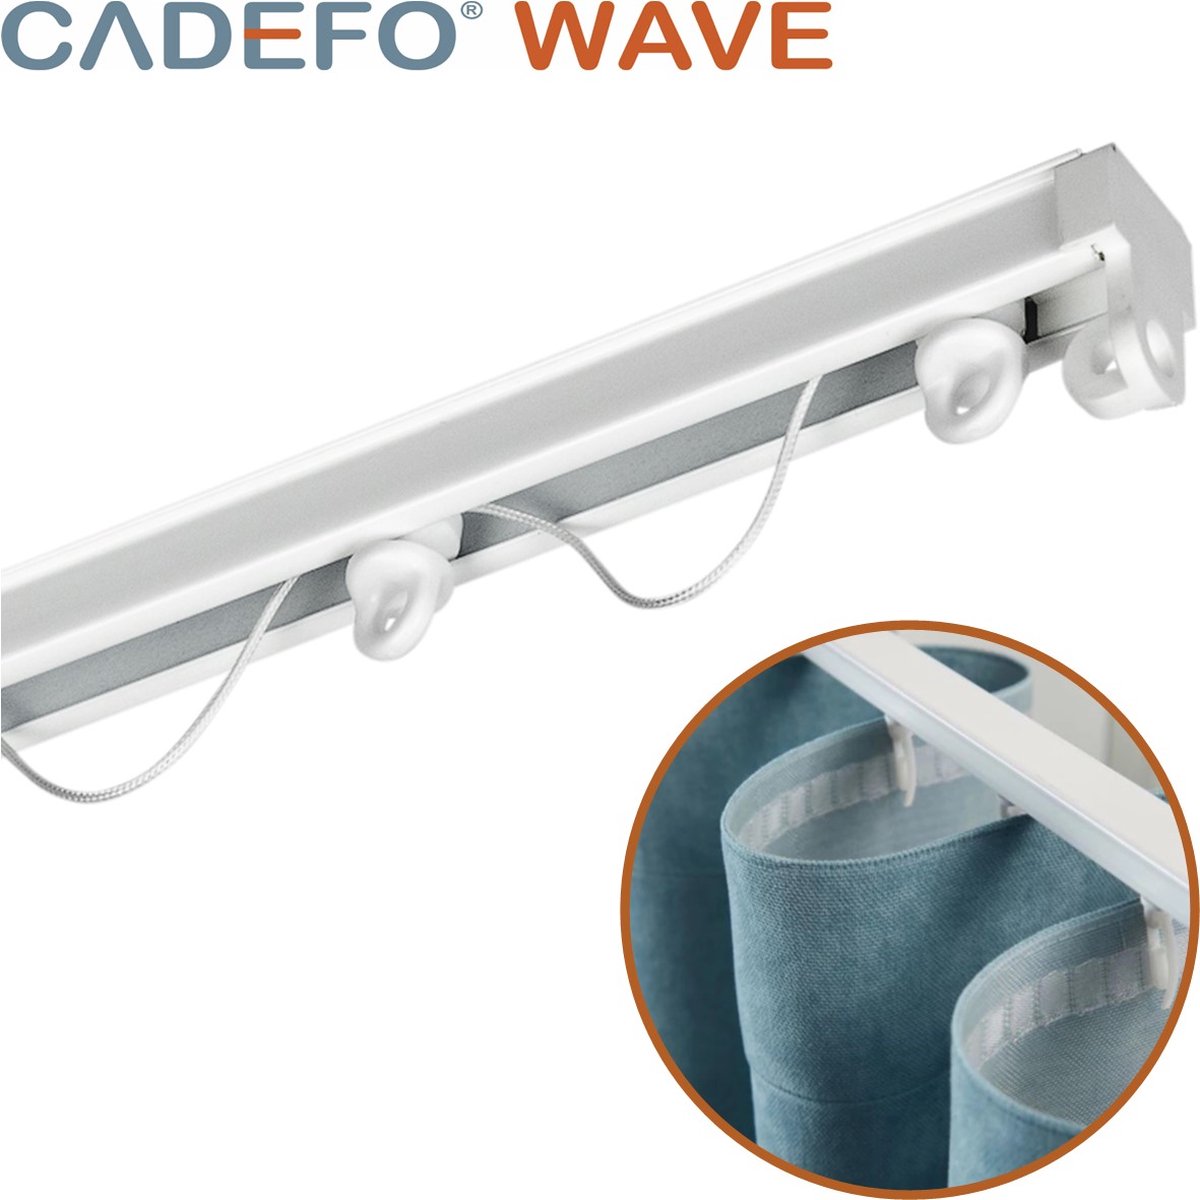 CADEFO WAVE (401 - 450 cm) Gordijnrails - Compleet op maat! - UIT 1 STUK - Leverbaar tot 6 meter - Plafondbevestiging - Lengte 424 cm